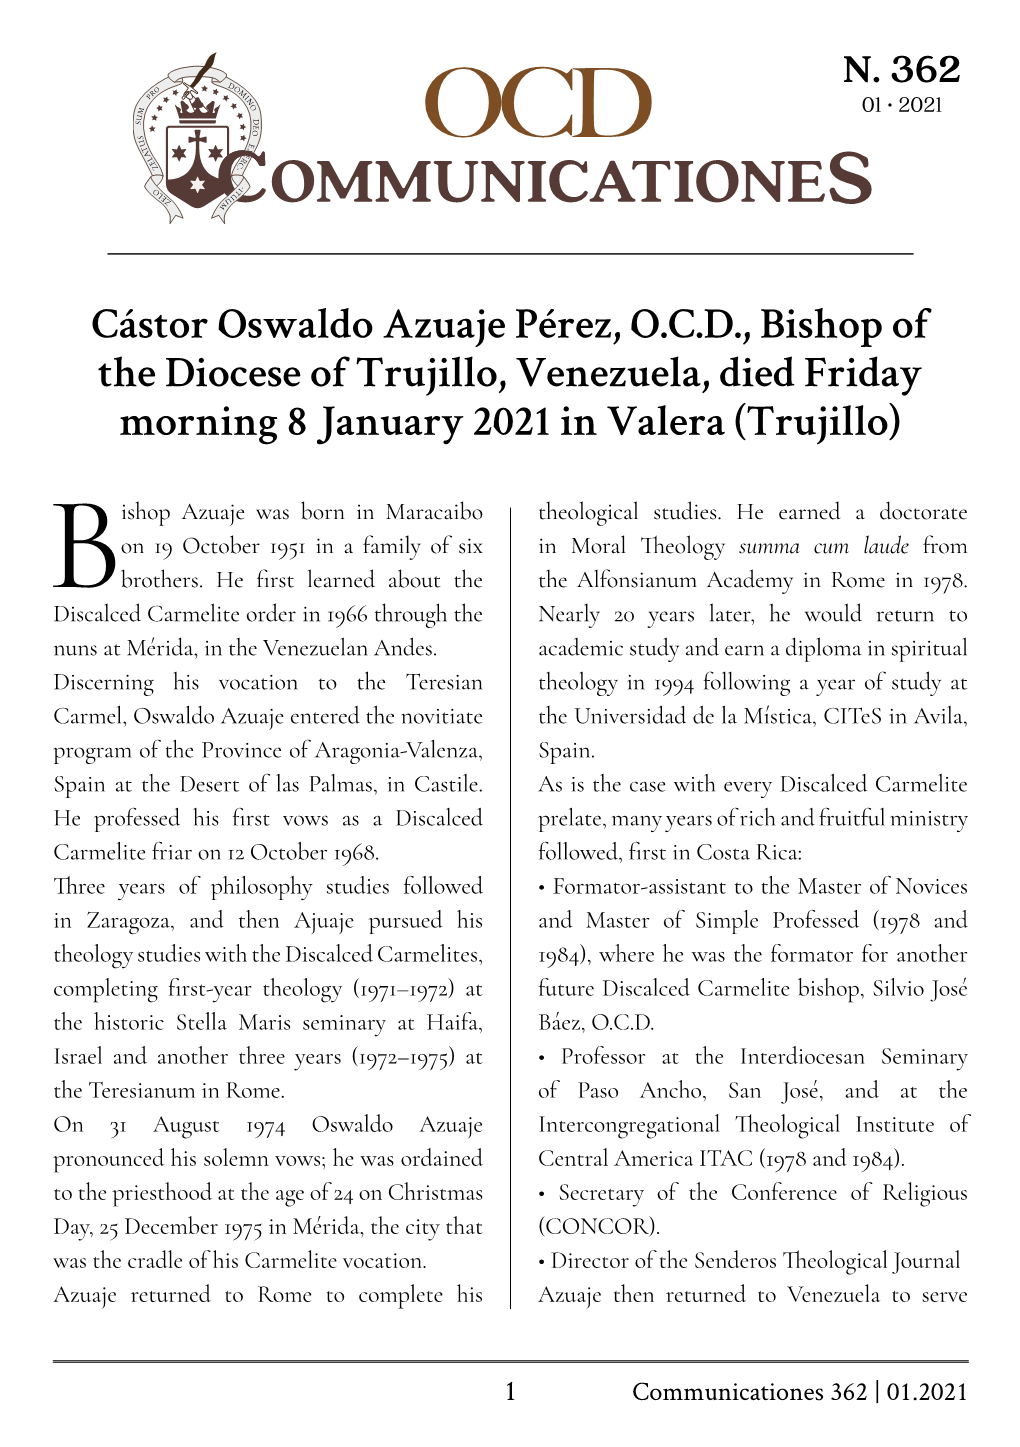 Cástor Oswaldo Azuaje Pérez, O.C.D., Bishop of the Diocese of Trujillo, Venezuela, Died Friday Morning 8 January 2021 in Valera (Trujillo)